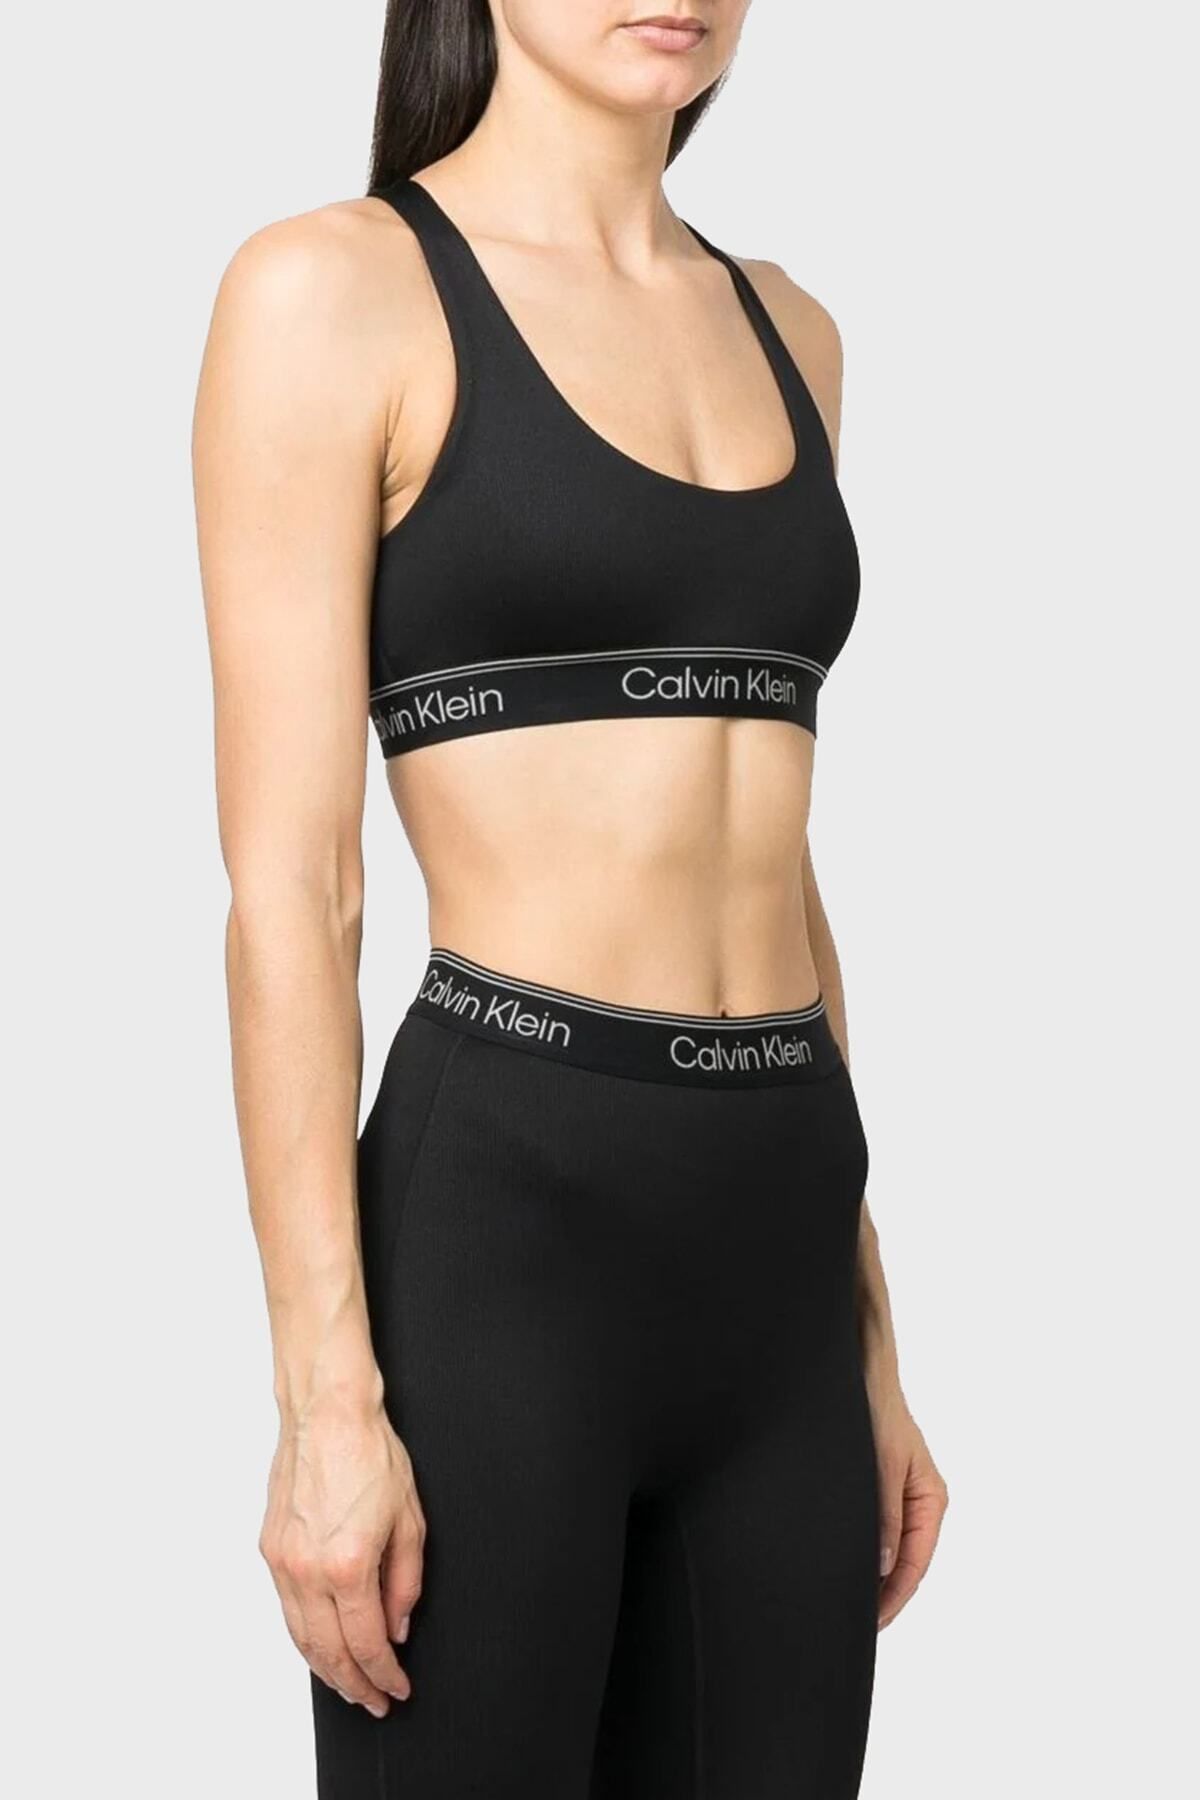 Calvin Klein Kadın Imzalı Elastik Bantlı Siyah Spor Sütyeni 00gws3k122-bae